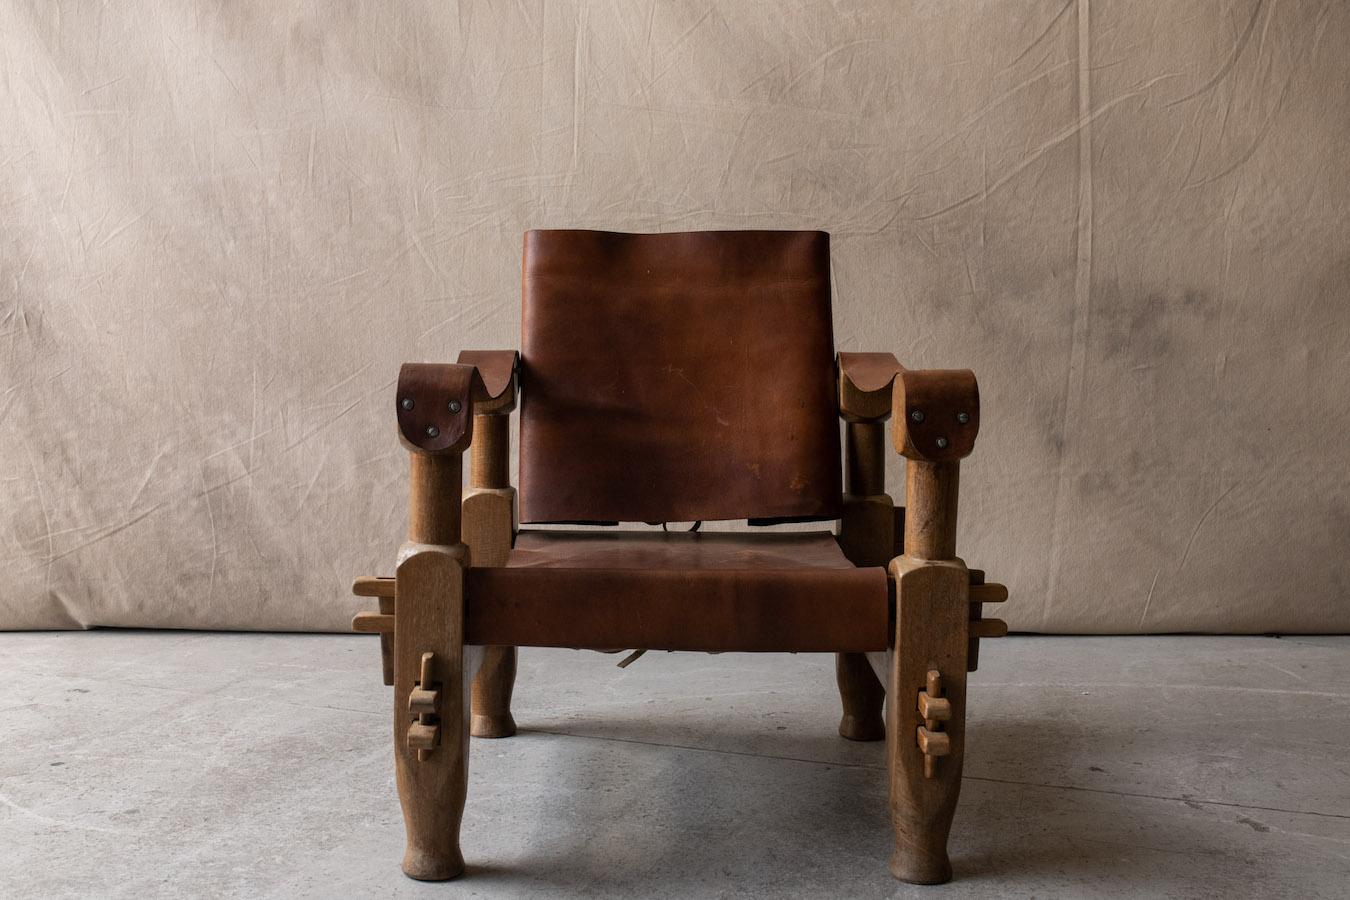 Chaise longue en cuir vintage du Brésil, vers 1960.  Construction en bois massif tendu de cuir de selle épais.  Légère usure et utilisation.

Nous n'avons pas le temps d'écrire une description détaillée de chacune de nos pièces. Nous préférons